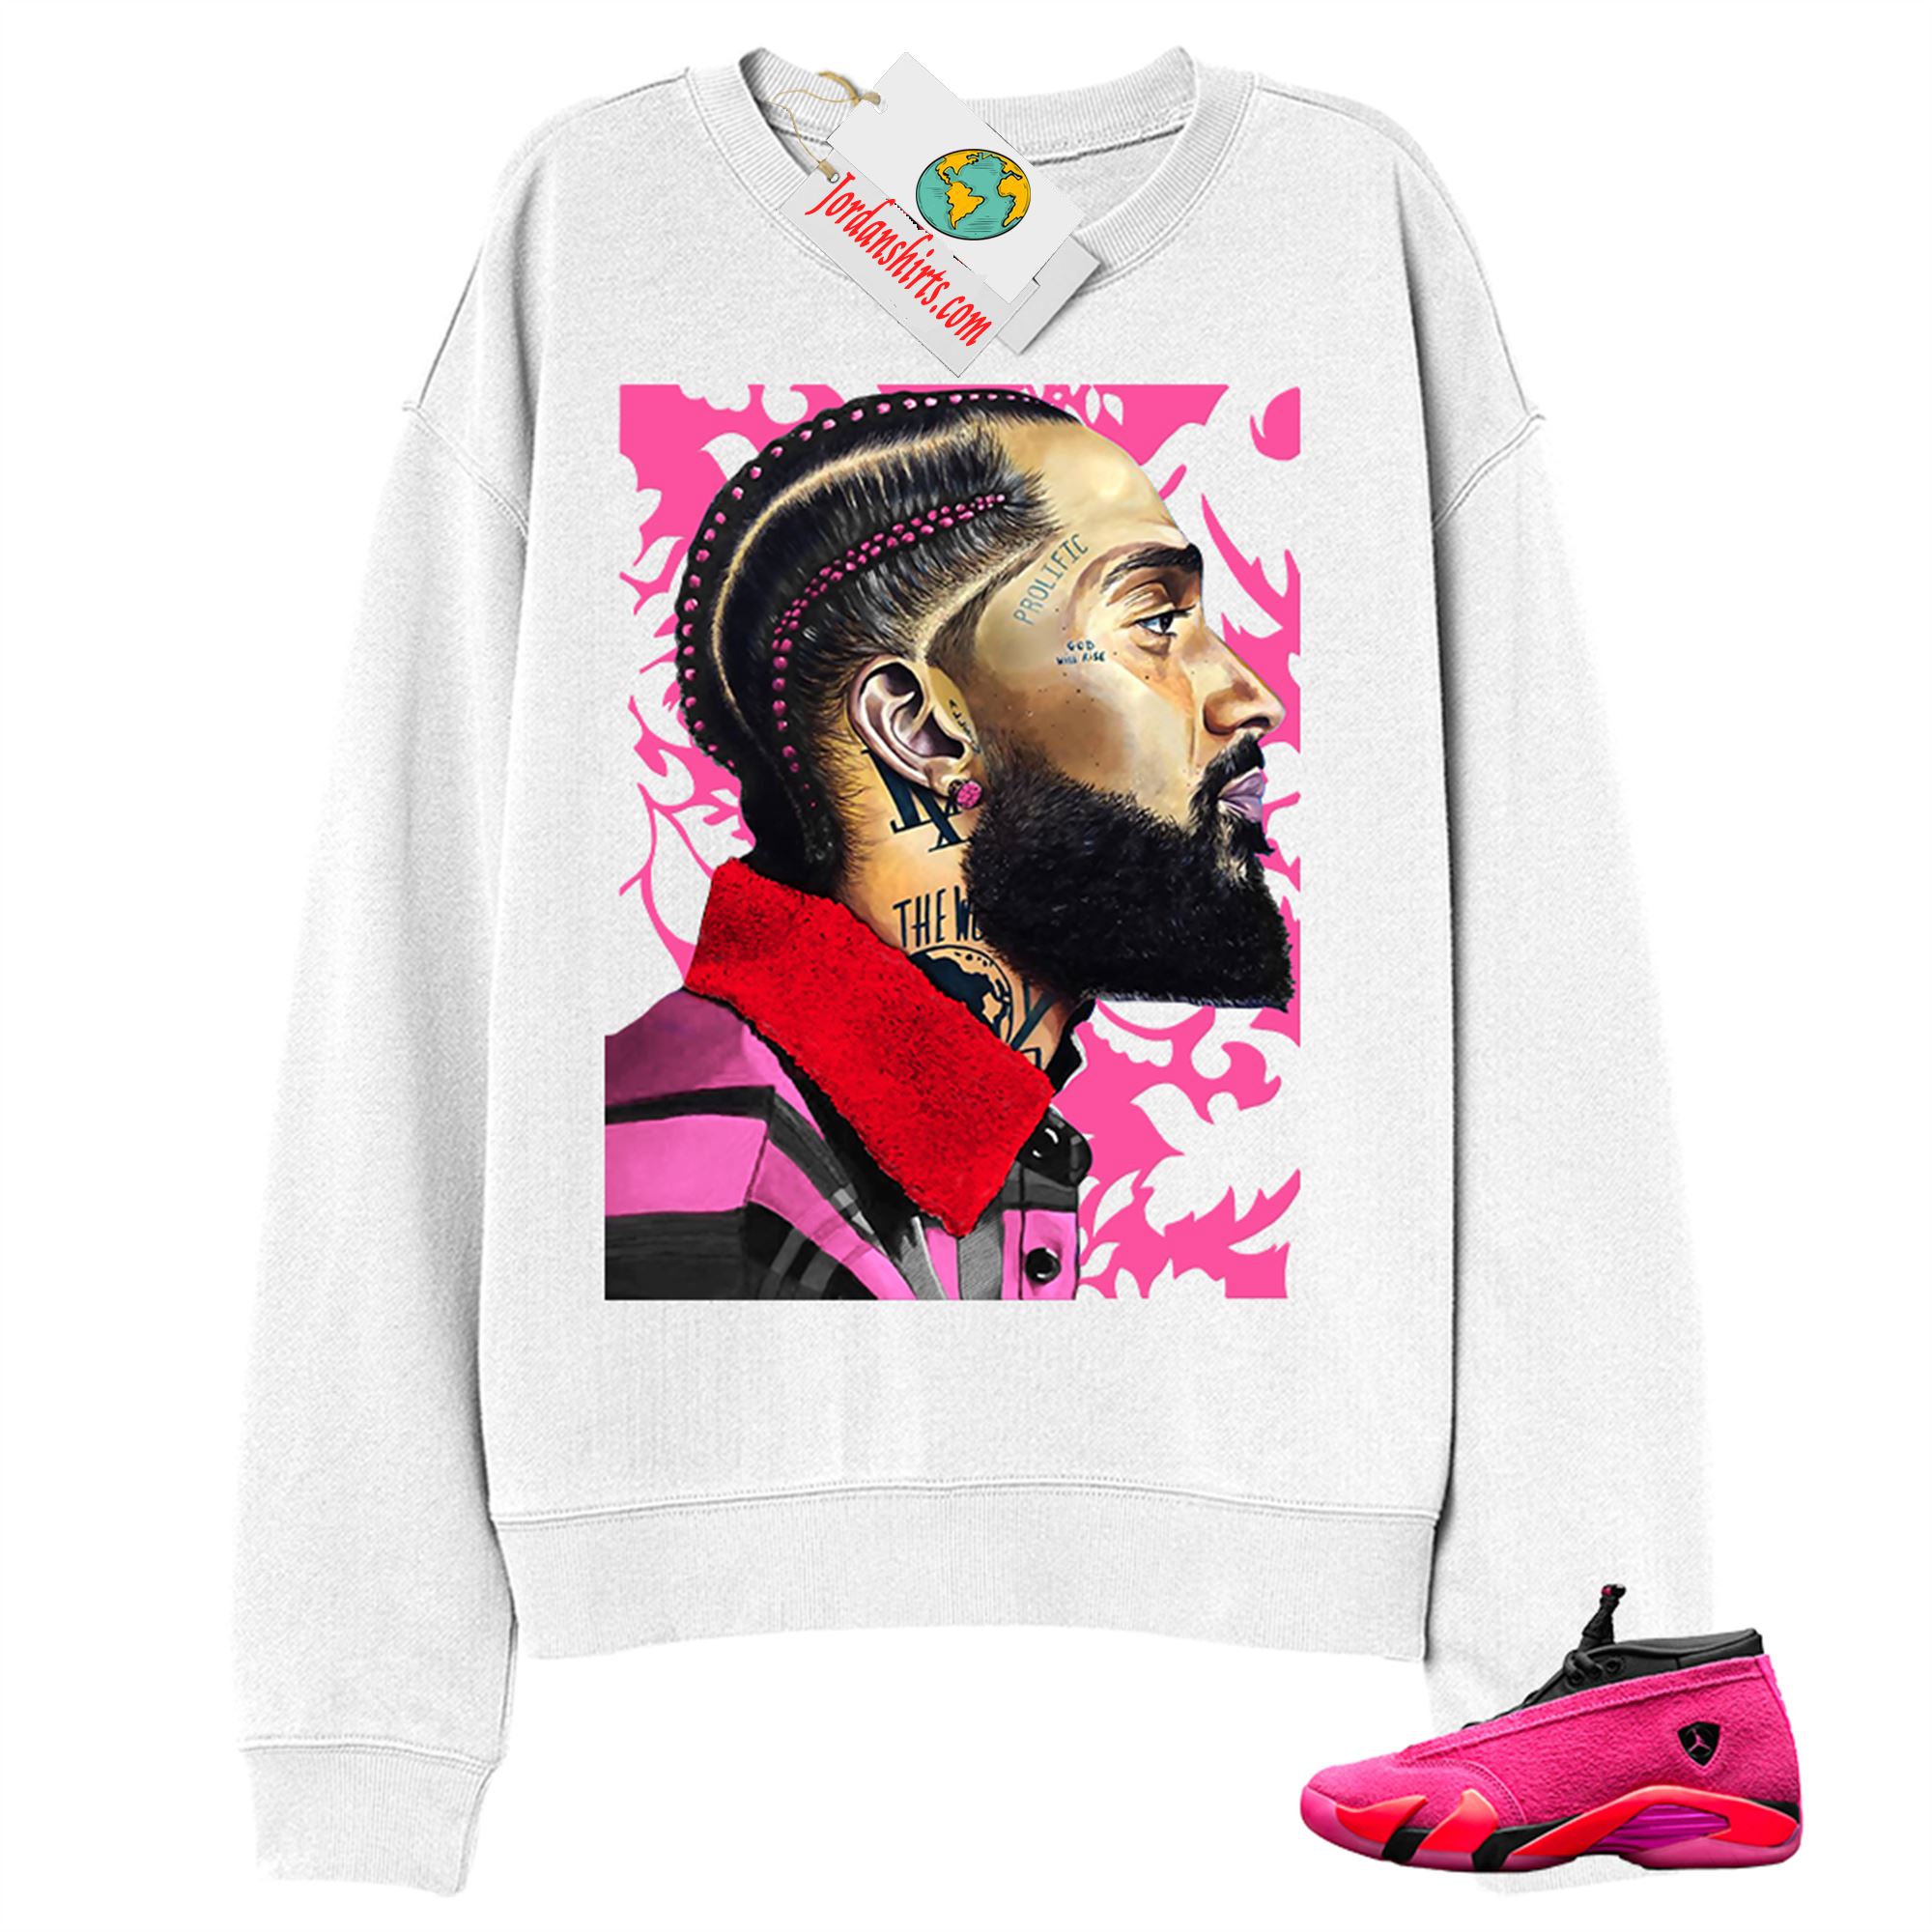 Jordan 14 Sweatshirt, Nipsey Hussle White Sweatshirt Air Jordan 14 Wmns Shocking Pink 14s Plus Size Up To 5xl